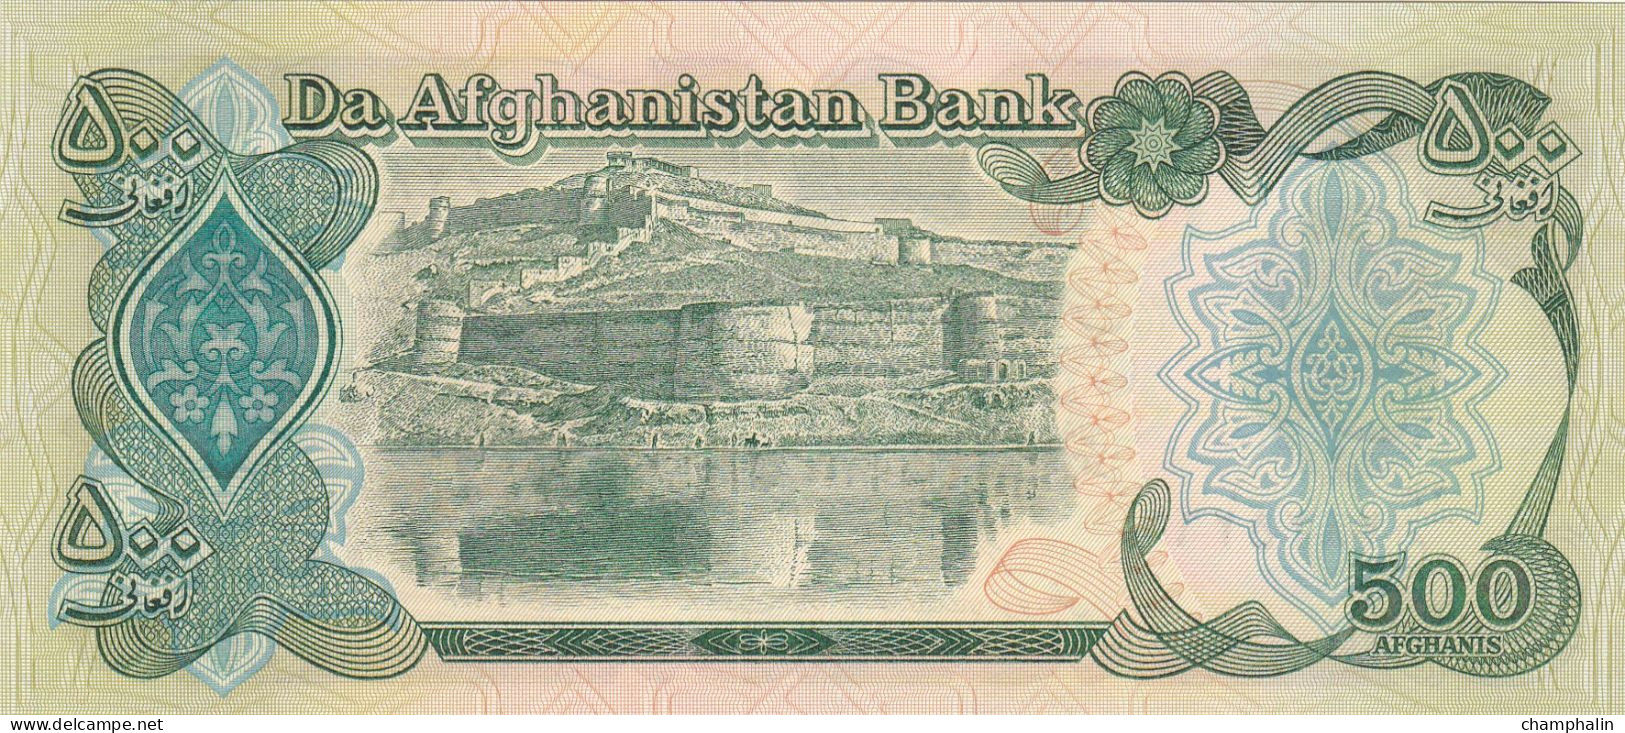 Afghanistan - Billet De 500 Afghanis - 1970 - P60a - Neuf - Afghanistan